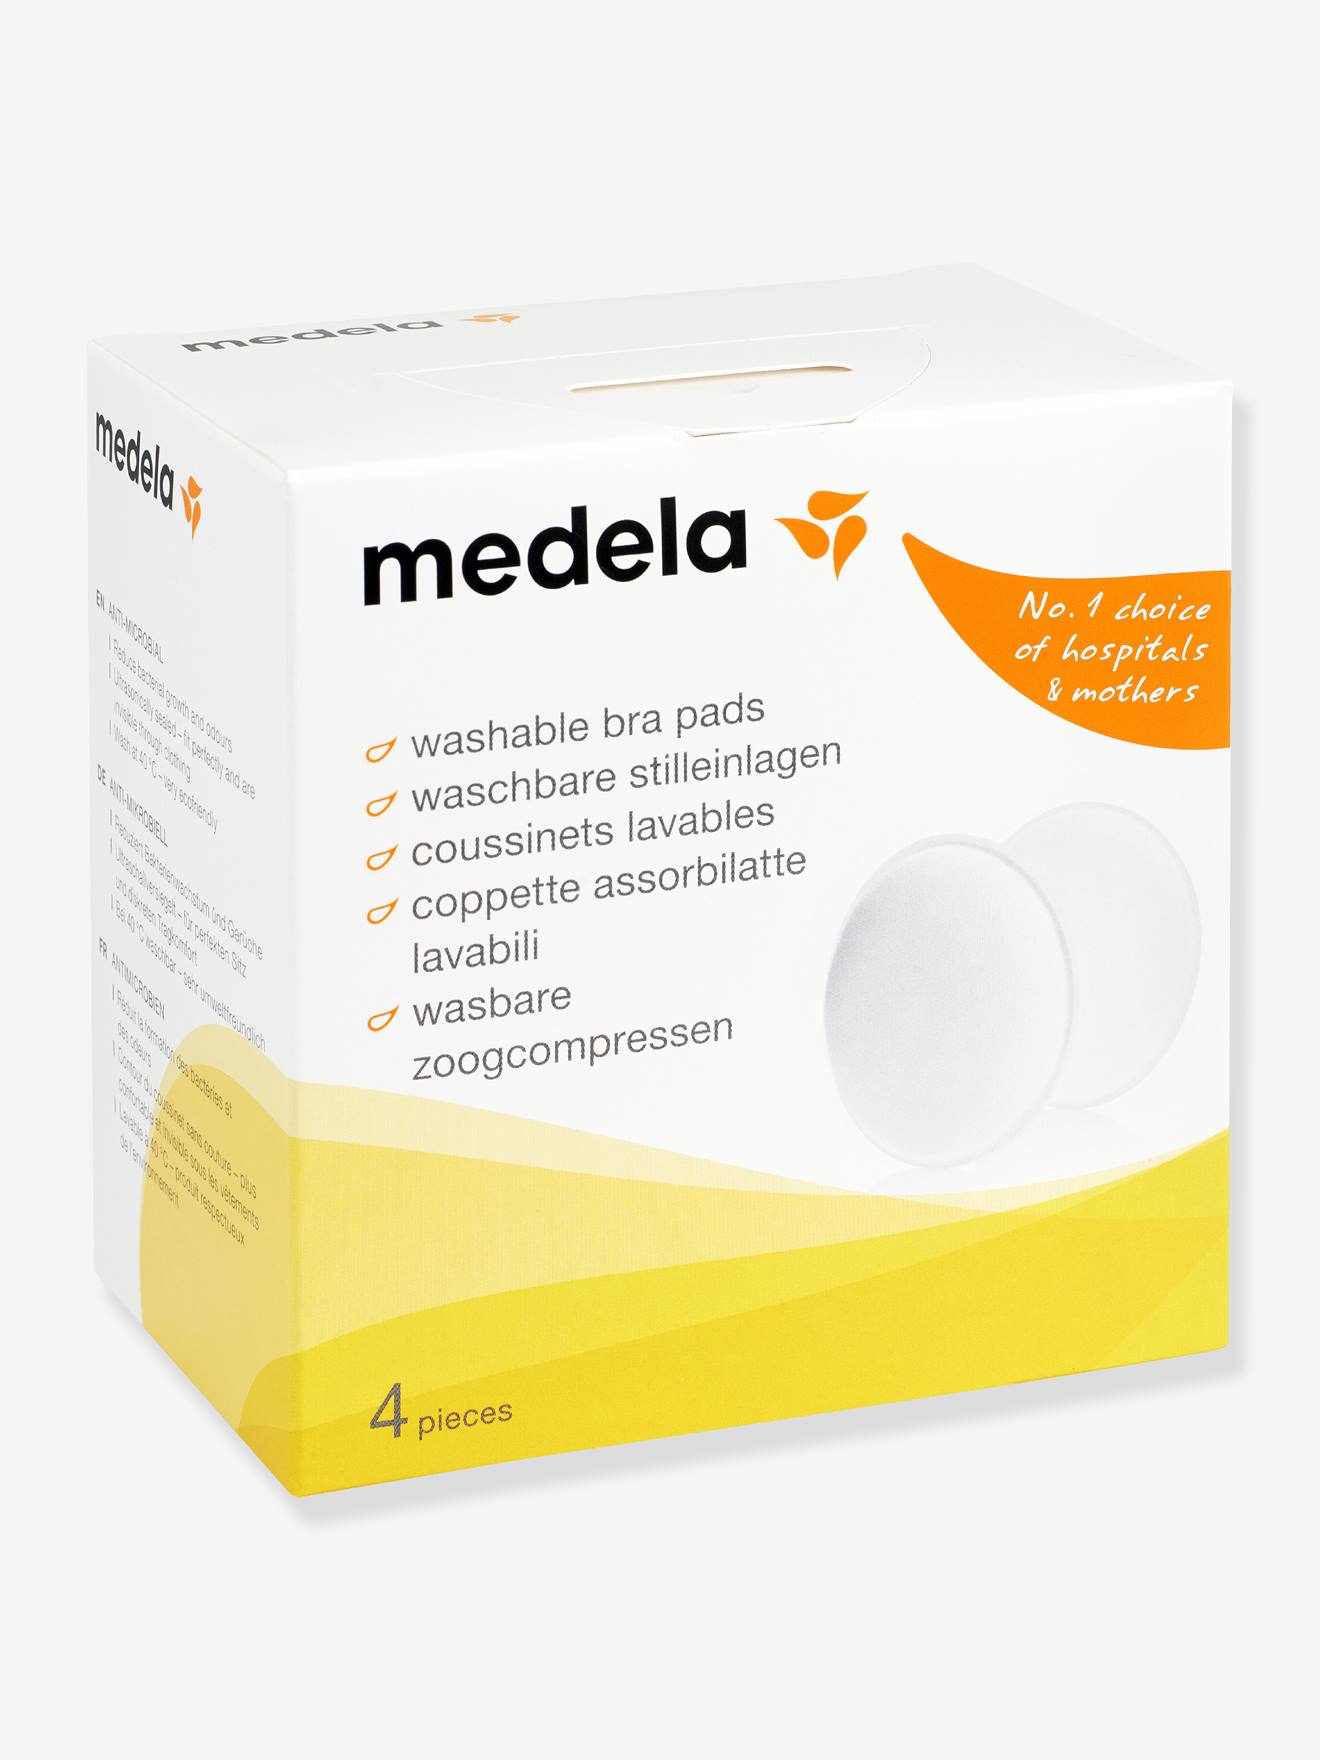 Medela - Safe & Dry Ultra Thin Nursing Pads - Pack of 30 - White